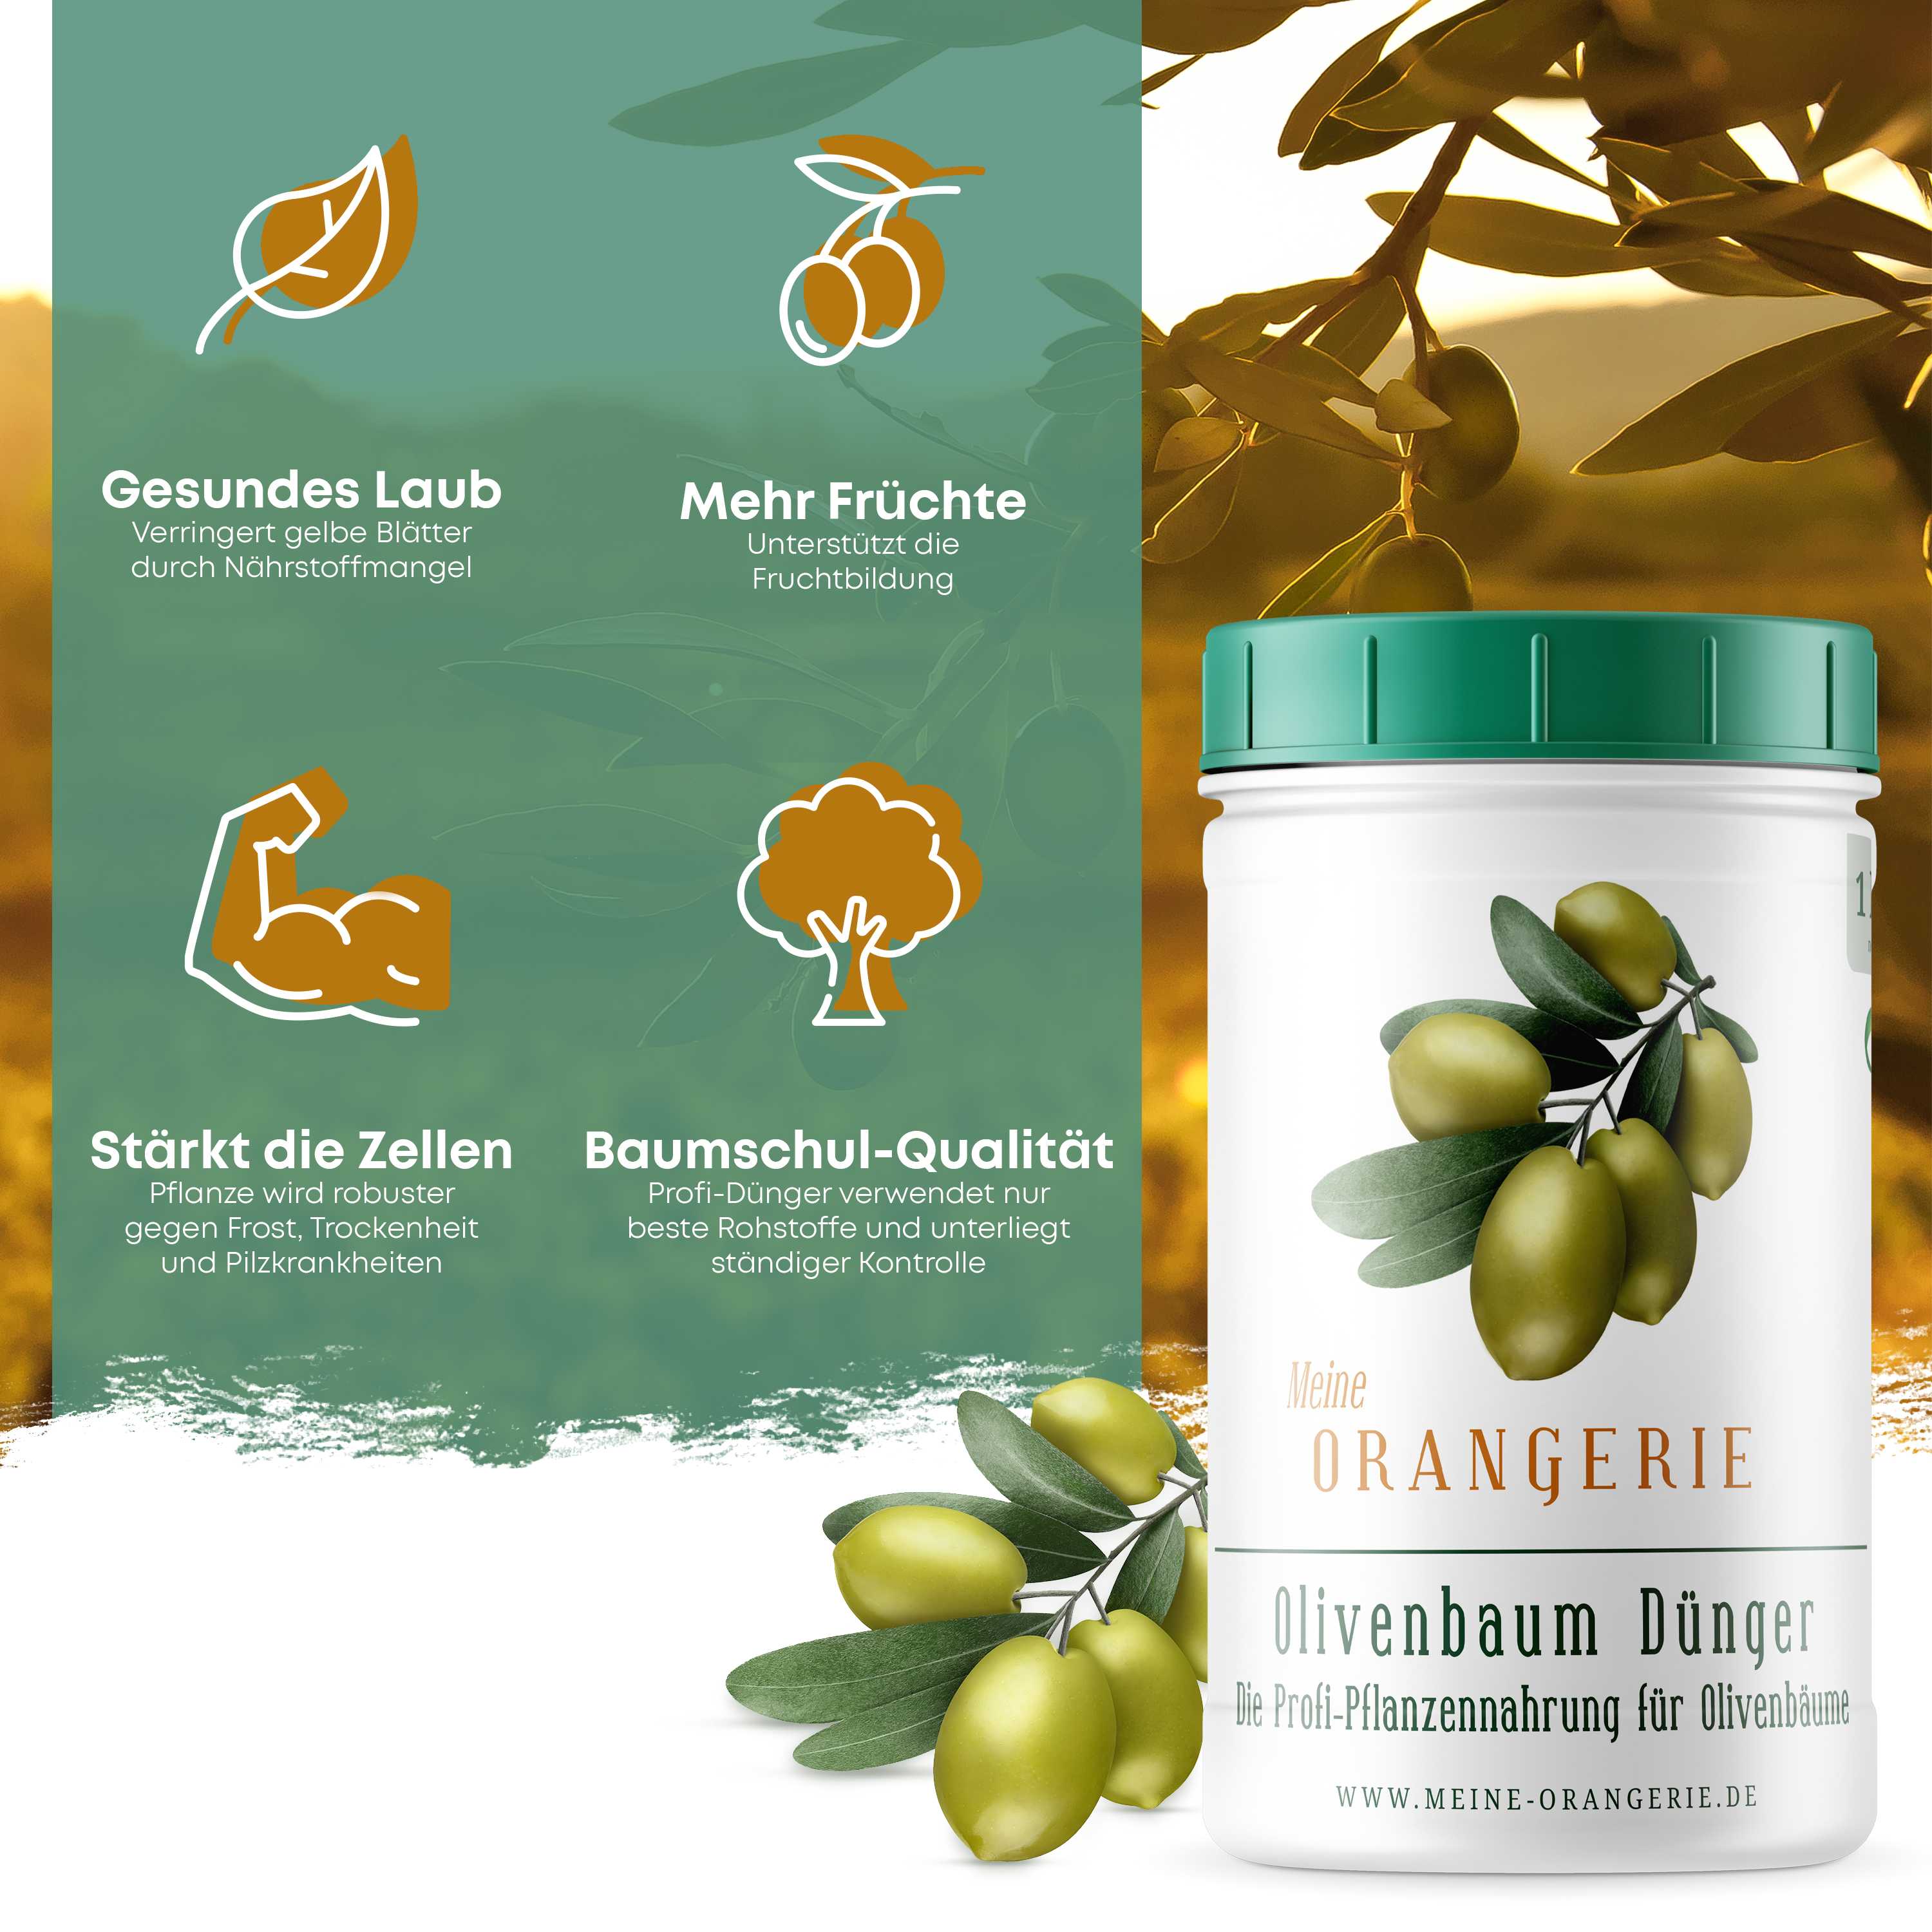 Meine Orangerie Olivendünger [1kg] - Premium Pflanzendünger für Olivenbäume